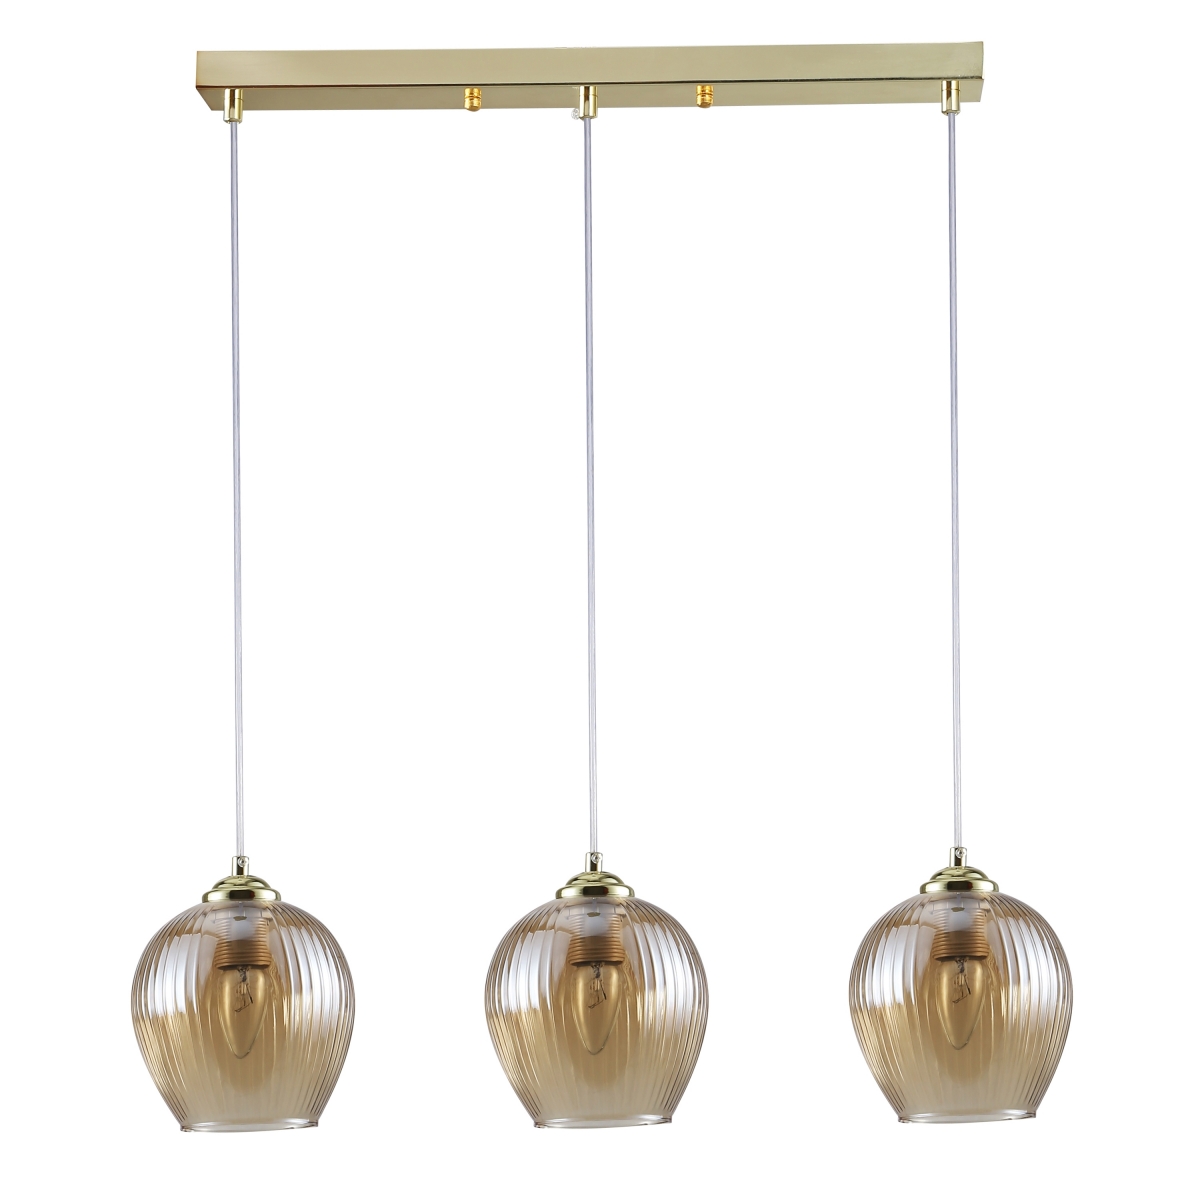 Złota lampa wisząca HANSEN, skandynawski design